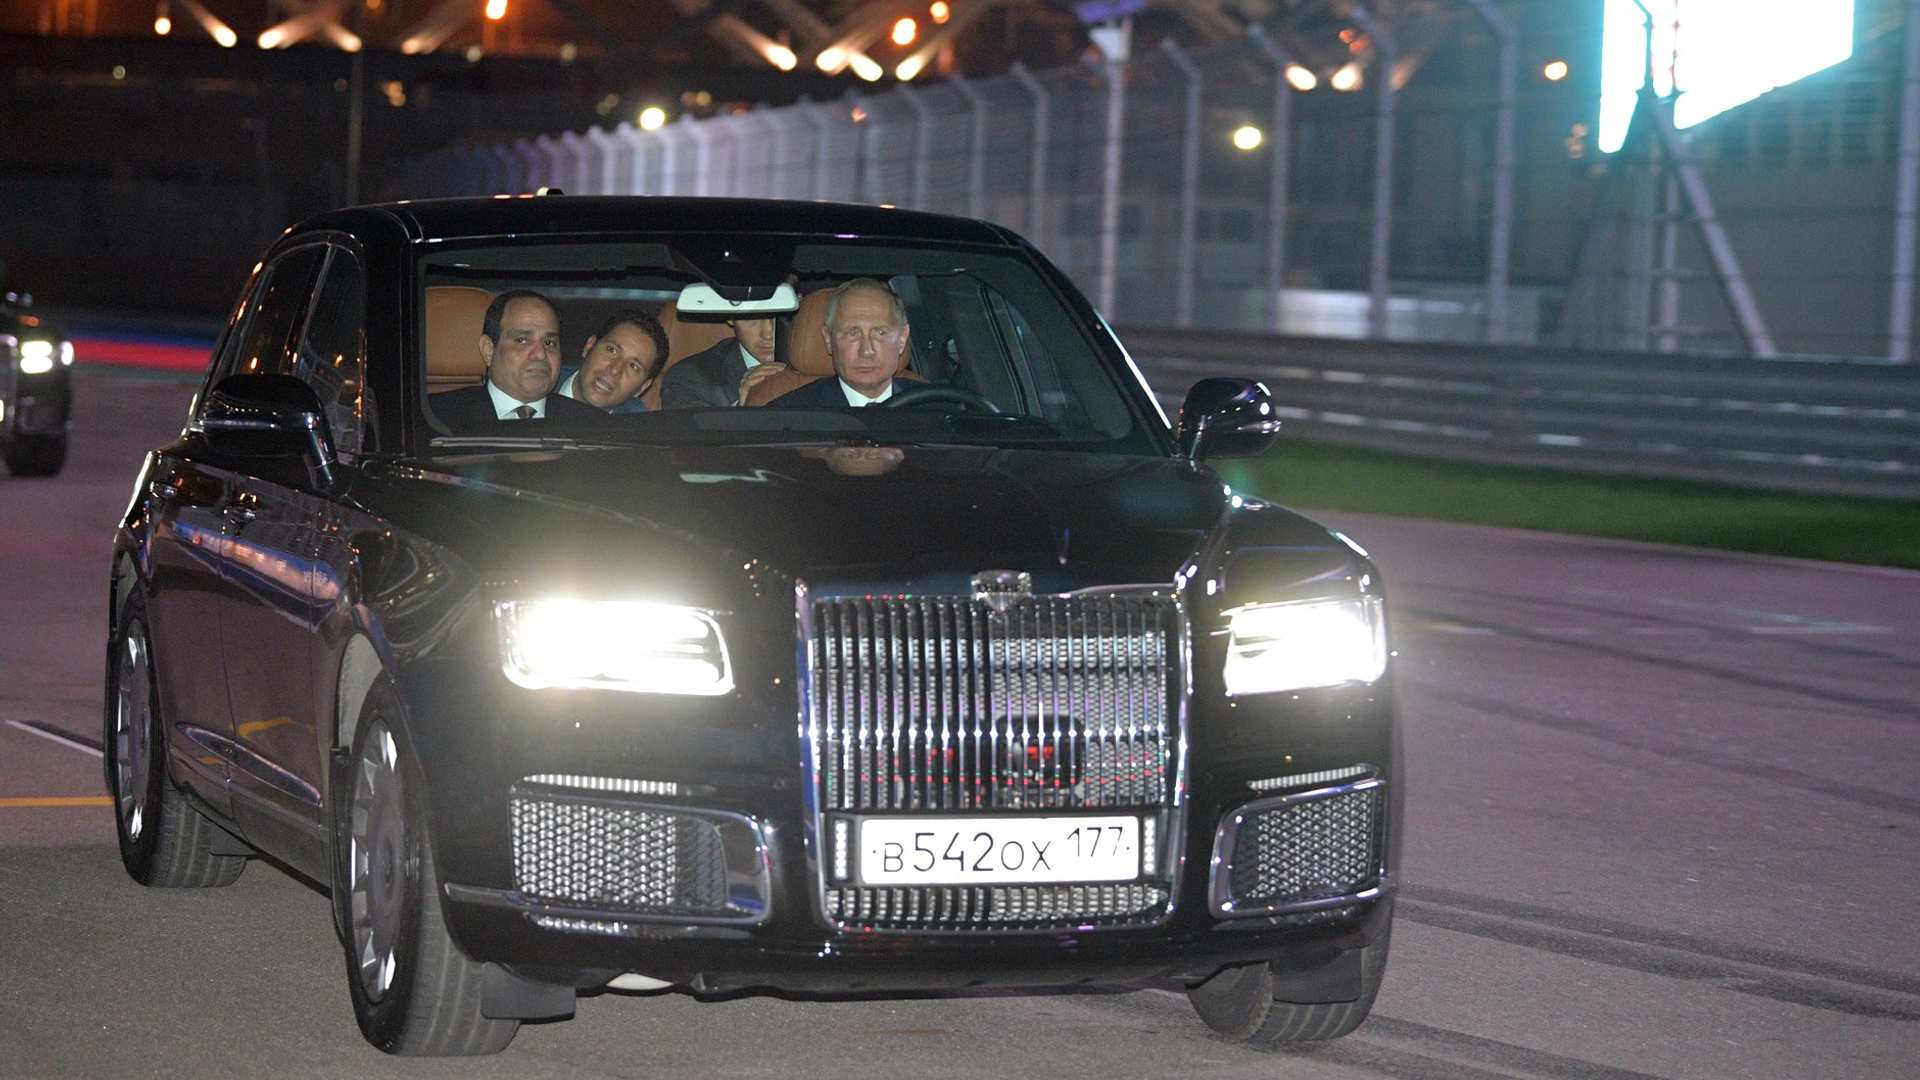 “بالصور” بوتين يصطحب السيسي في جولة داخل ليموزين يقودها بنفسه